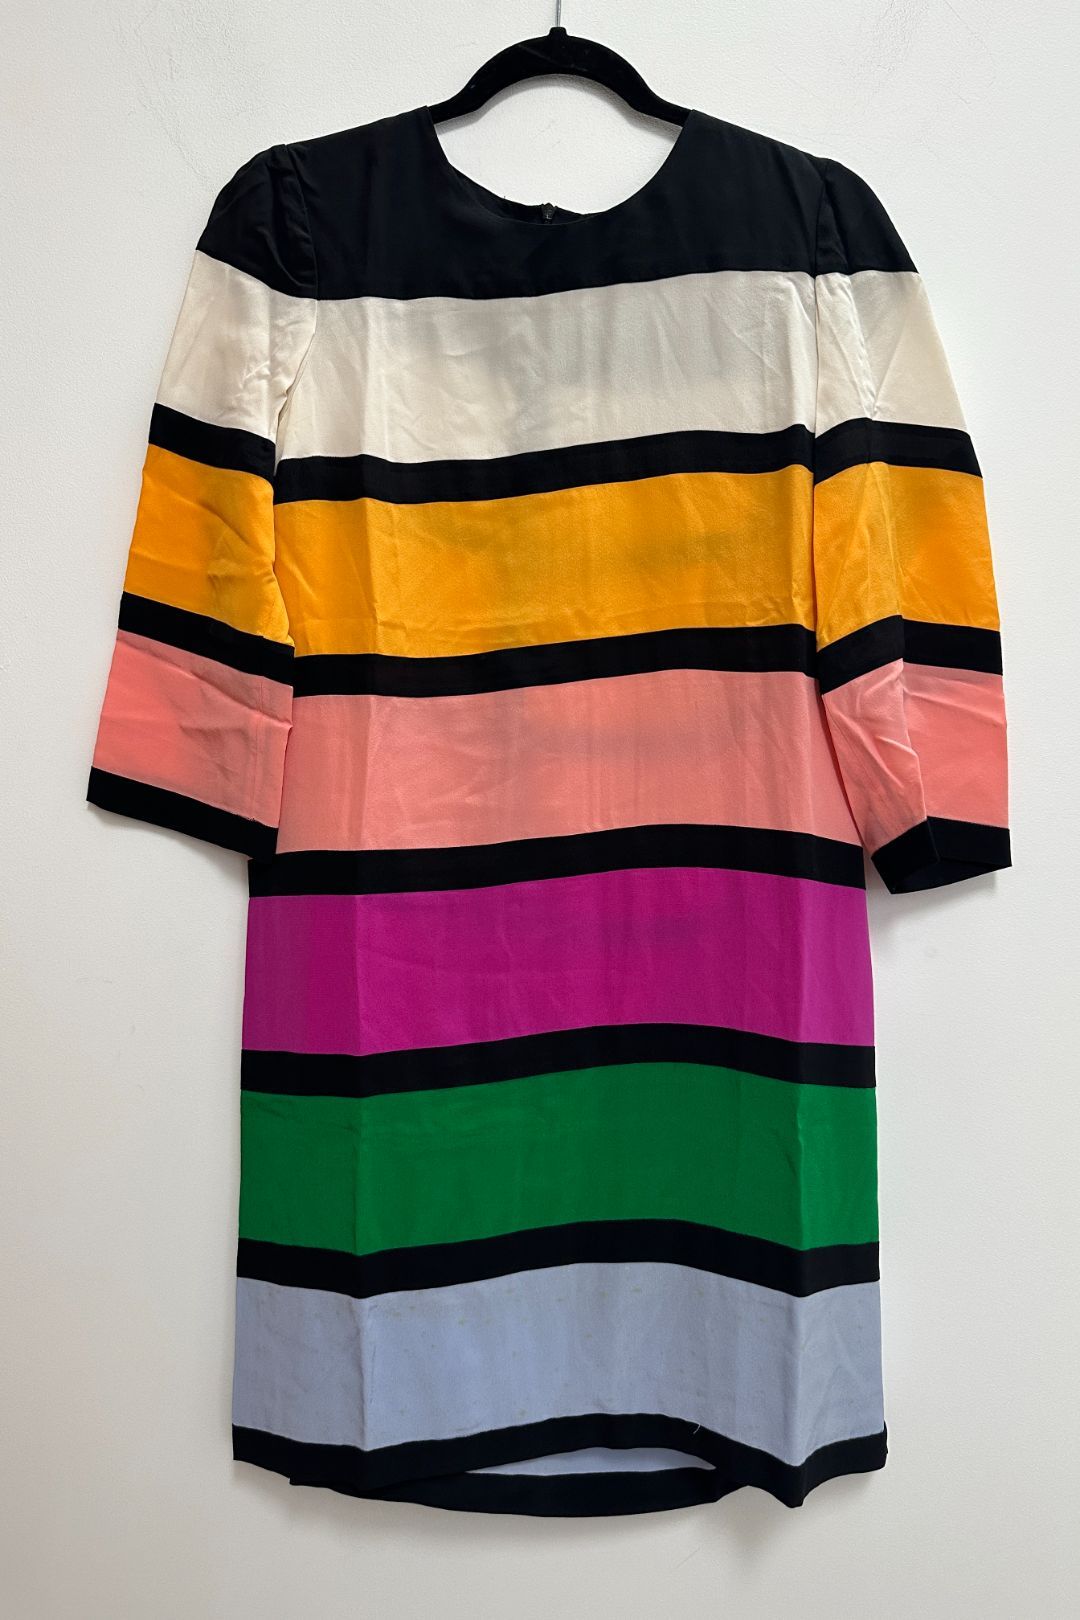 Multi Coloured Striped Shift Dress